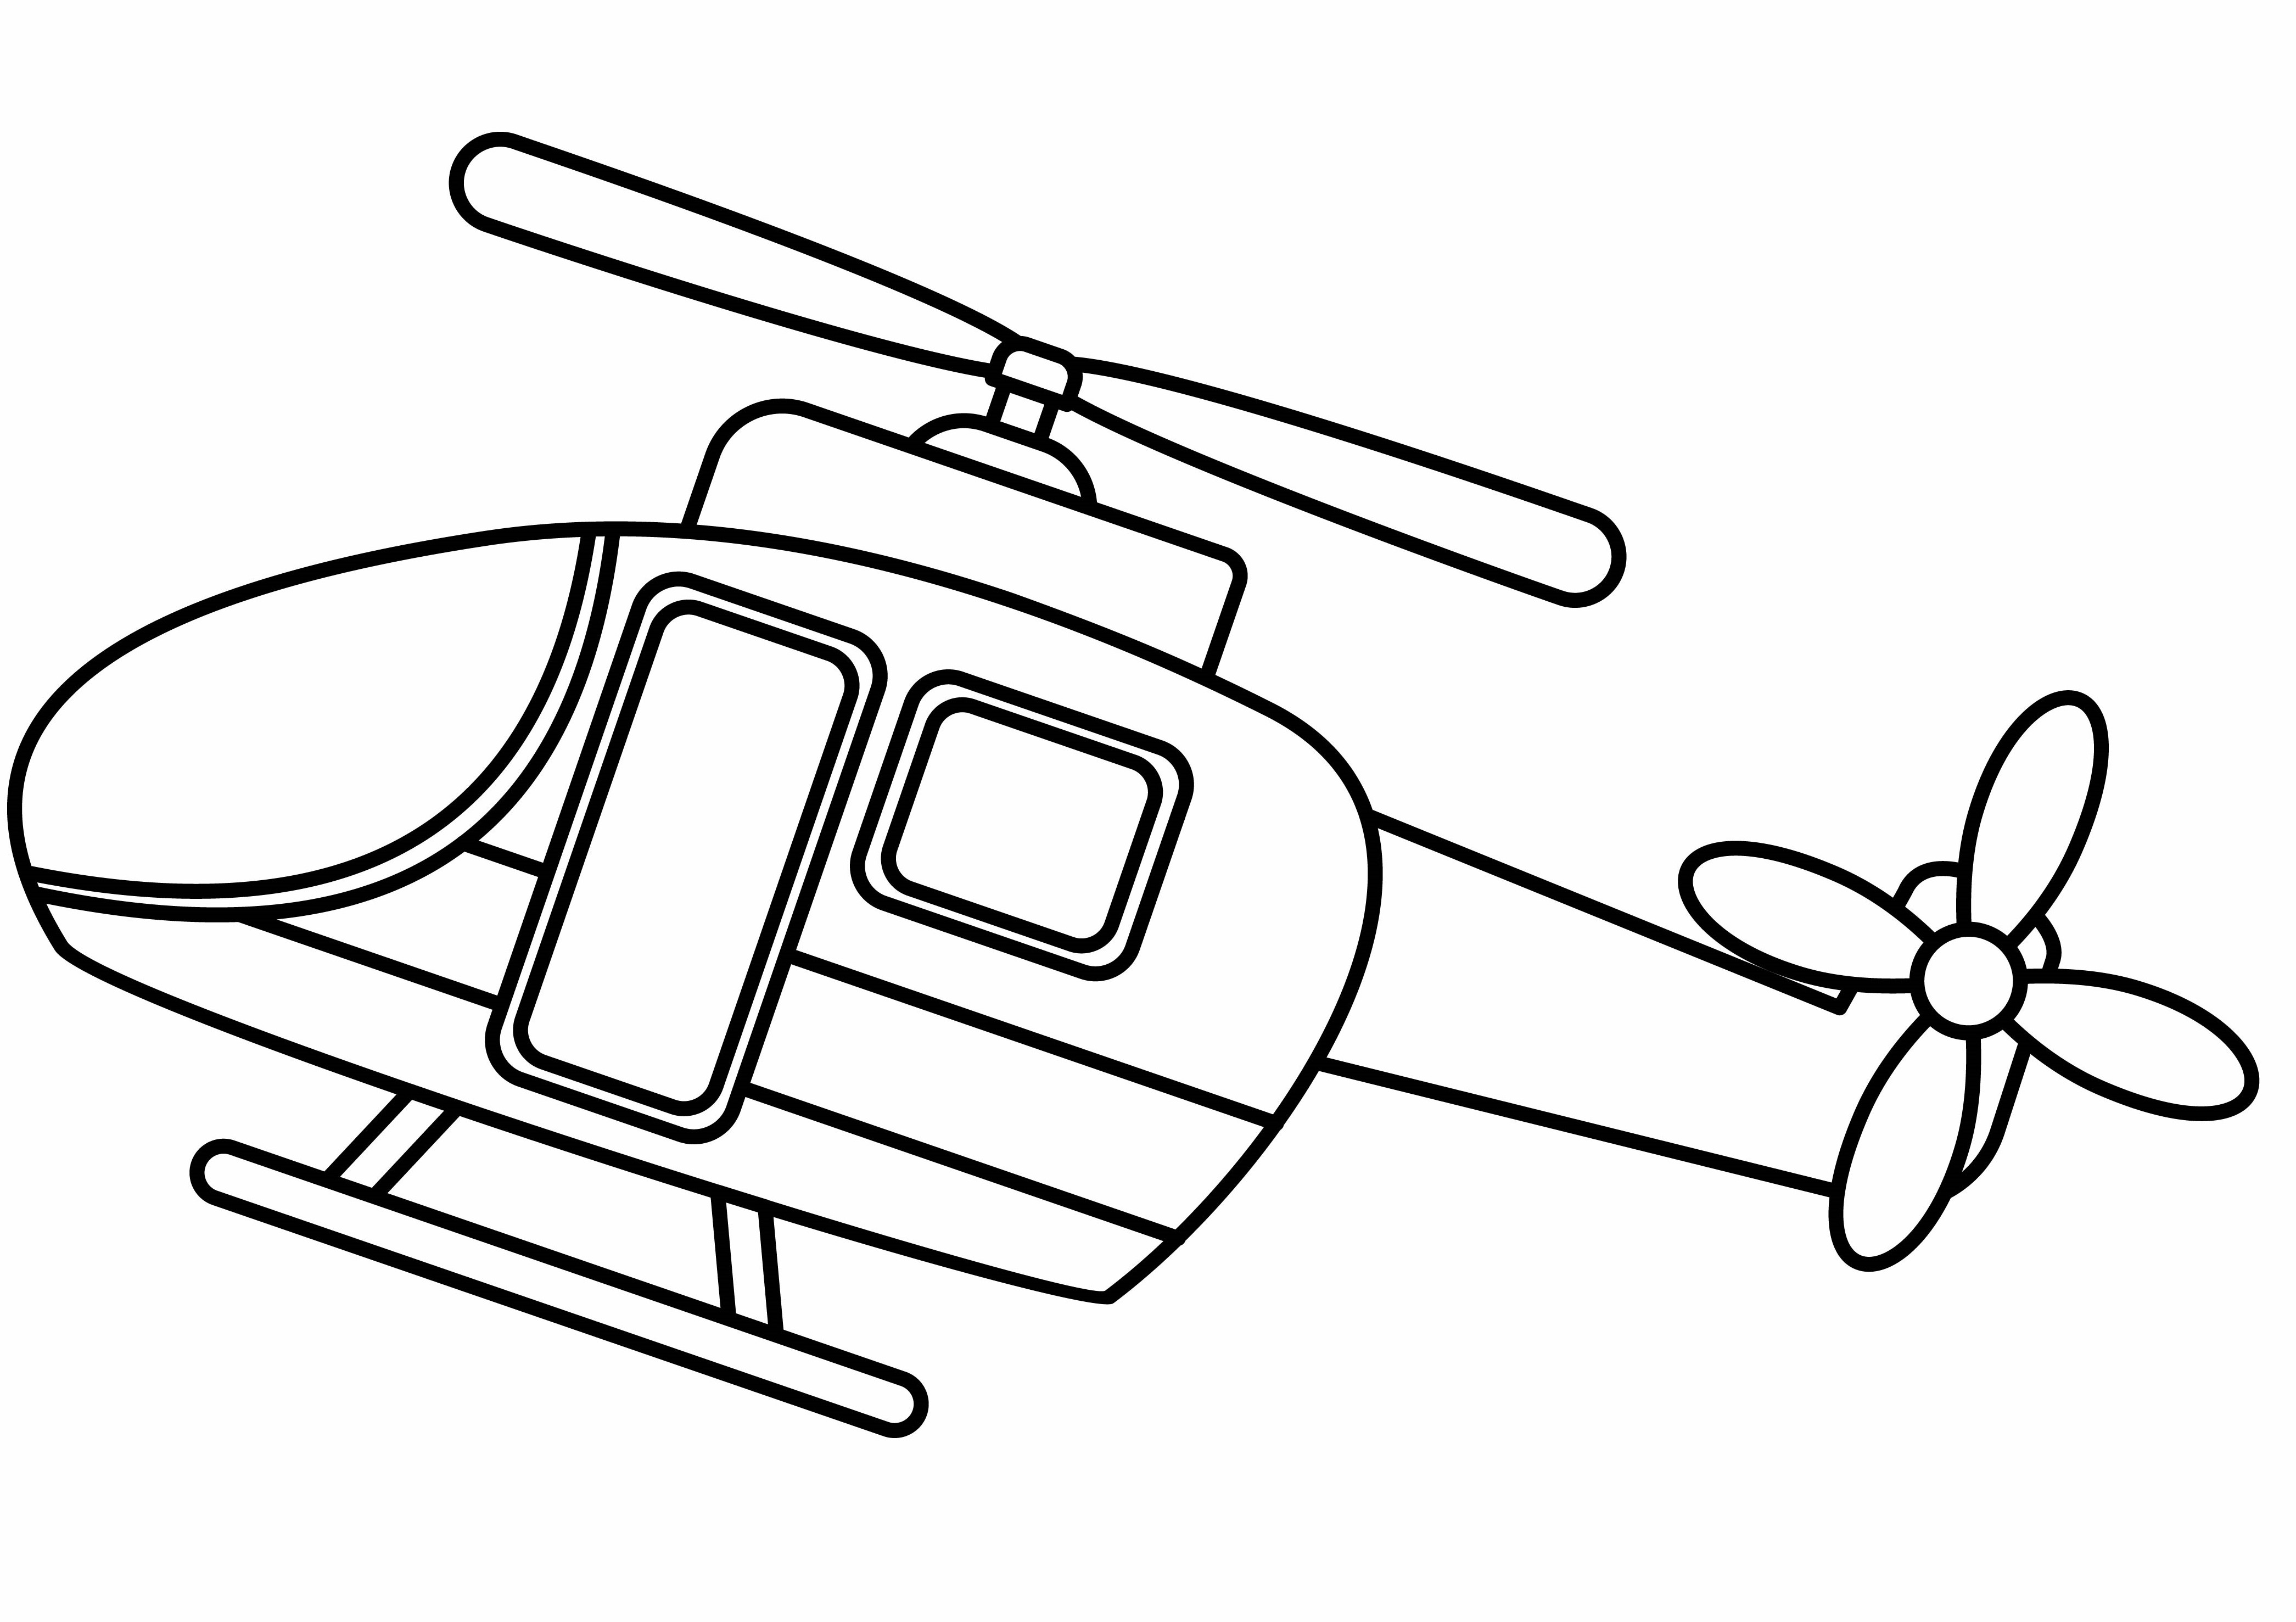 Раскраска вертолет «Маленький авиалайнер» формата А4 в высоком качестве